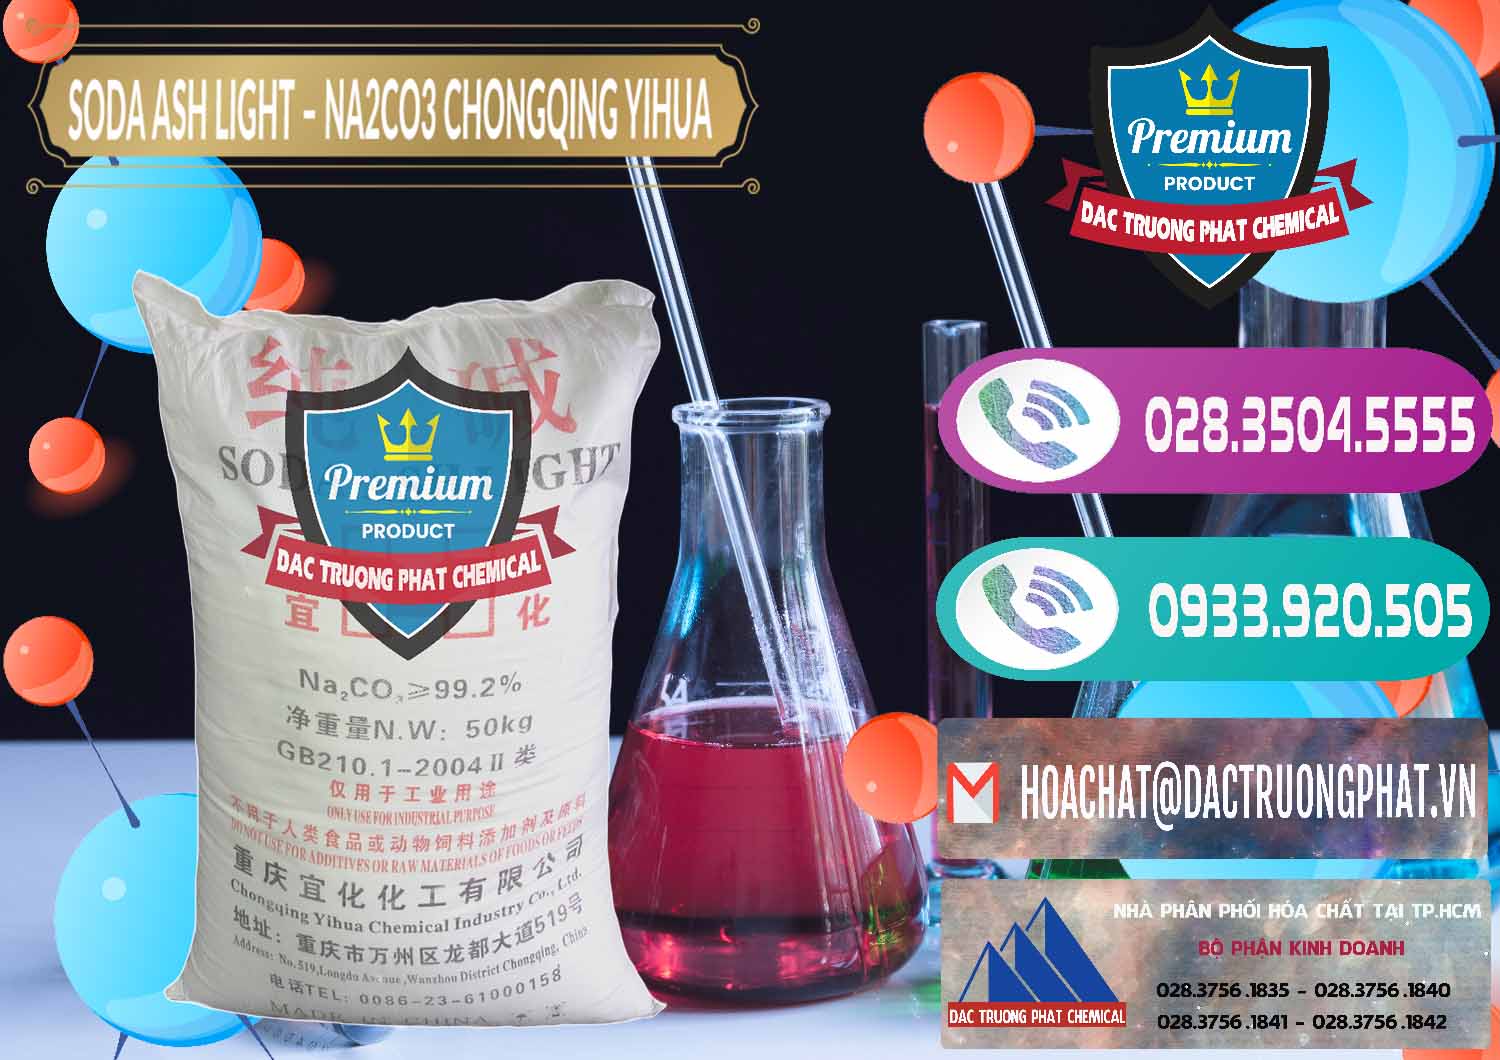 Cty nhập khẩu _ bán Soda Ash Light - NA2CO3 Chongqing Yihua Trung Quốc China - 0129 - Công ty chuyên phân phối _ bán hóa chất tại TP.HCM - hoachatxulynuoc.com